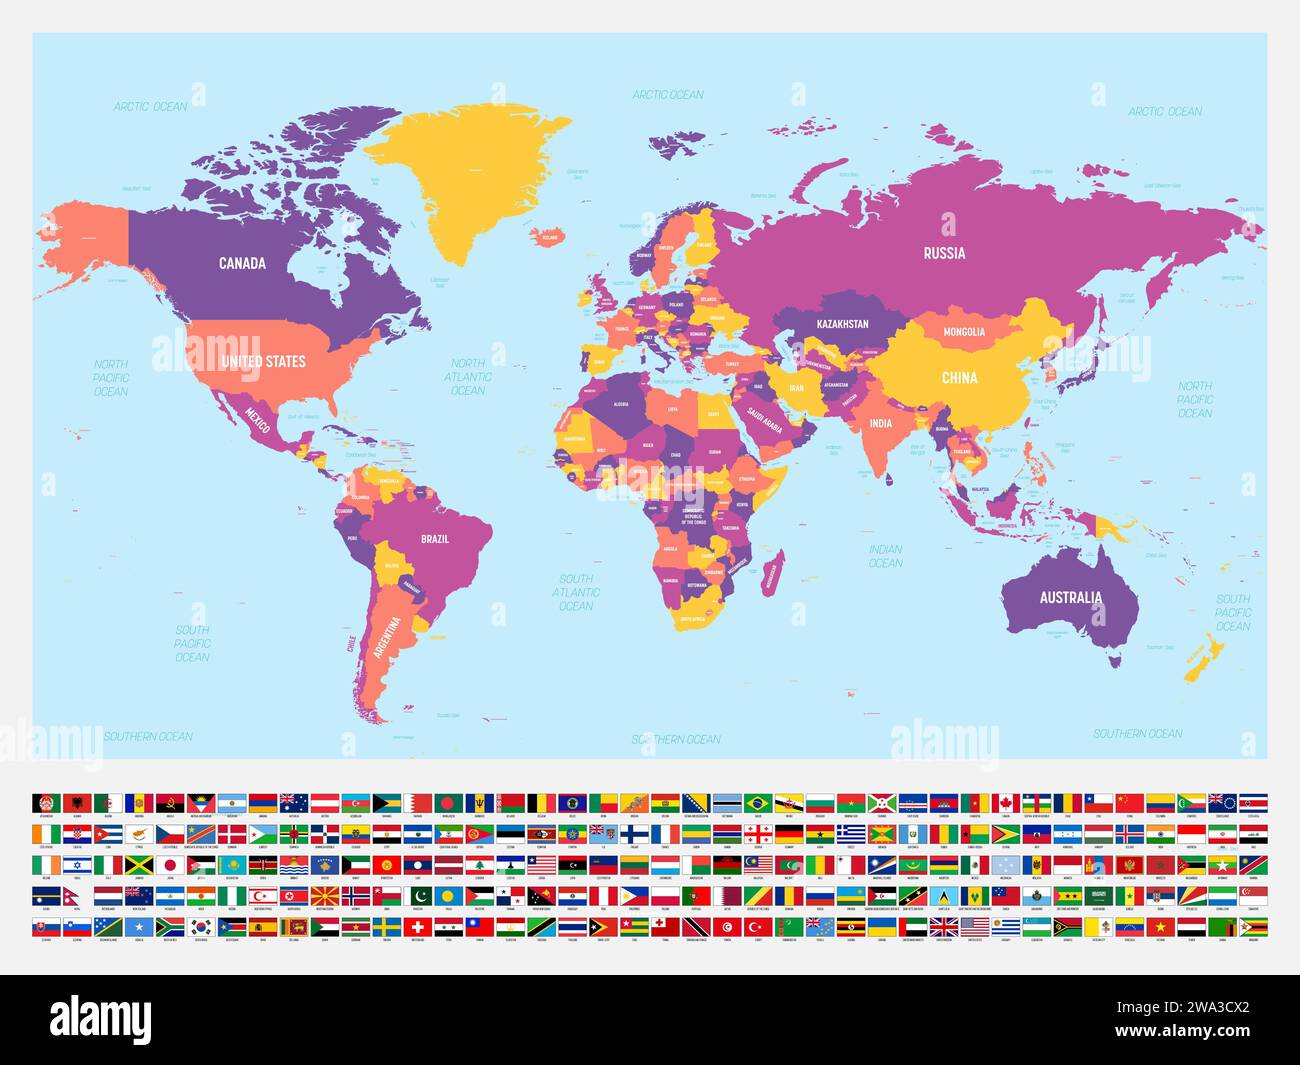 Carte politique colorée du monde avec des étiquettes de pays et d'eau. Avec ensemble de drapeaux nationaux des pays sous la carte. Illustration vectorielle. Illustration de Vecteur